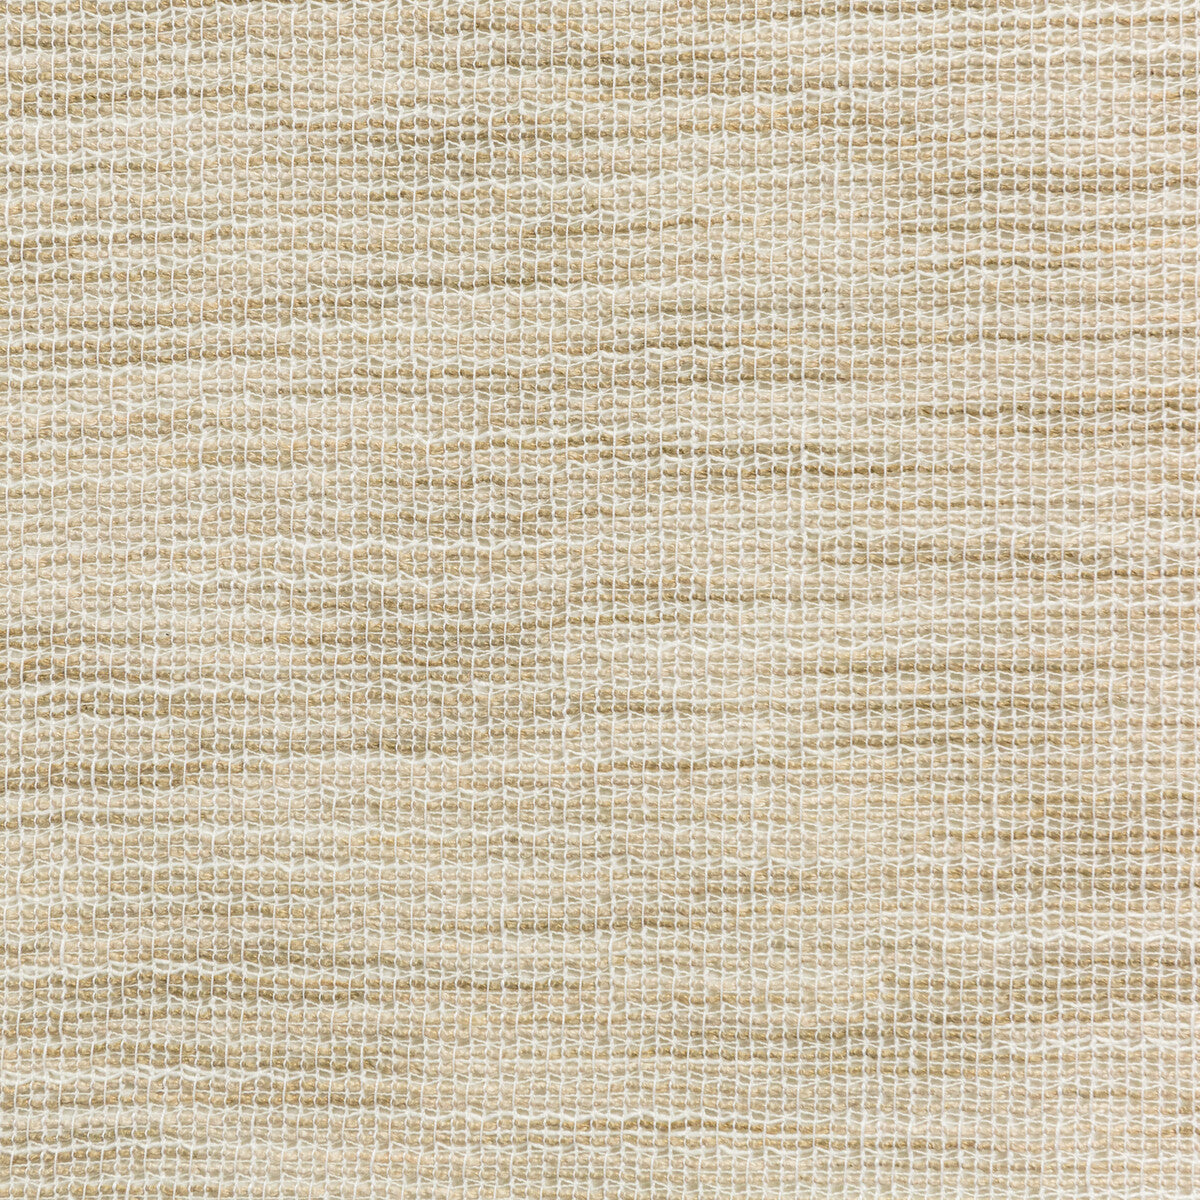 Kravet Basics fabric in 4676-16 color - pattern 4676.16.0 - by Kravet Basics